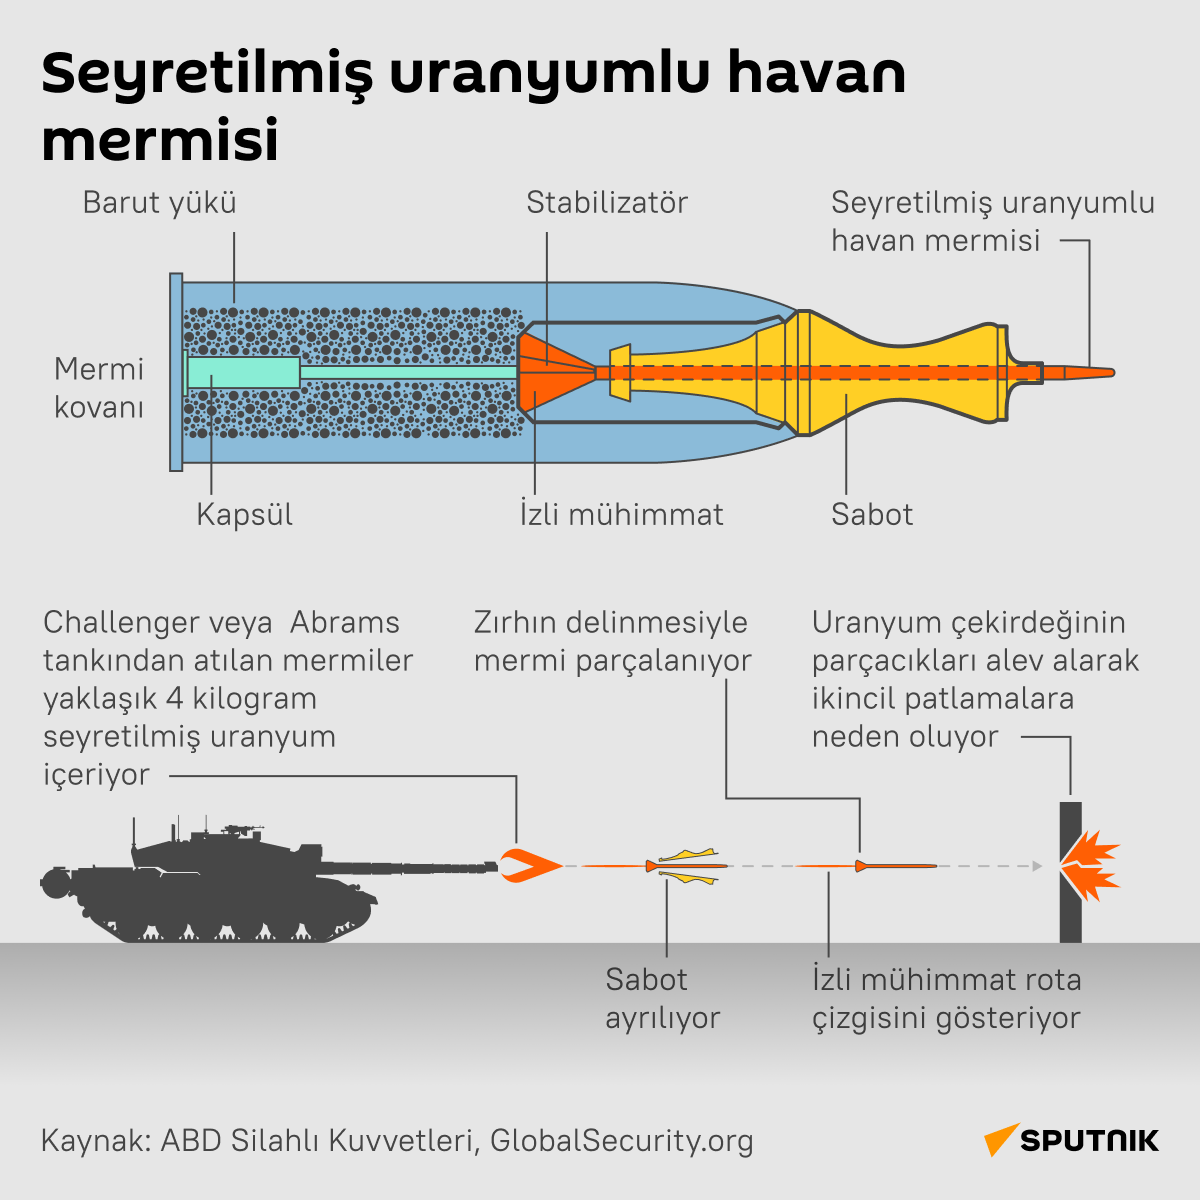 İnfografik Seyretilmiş uranyumlu havan mermisi  - Sputnik Türkiye